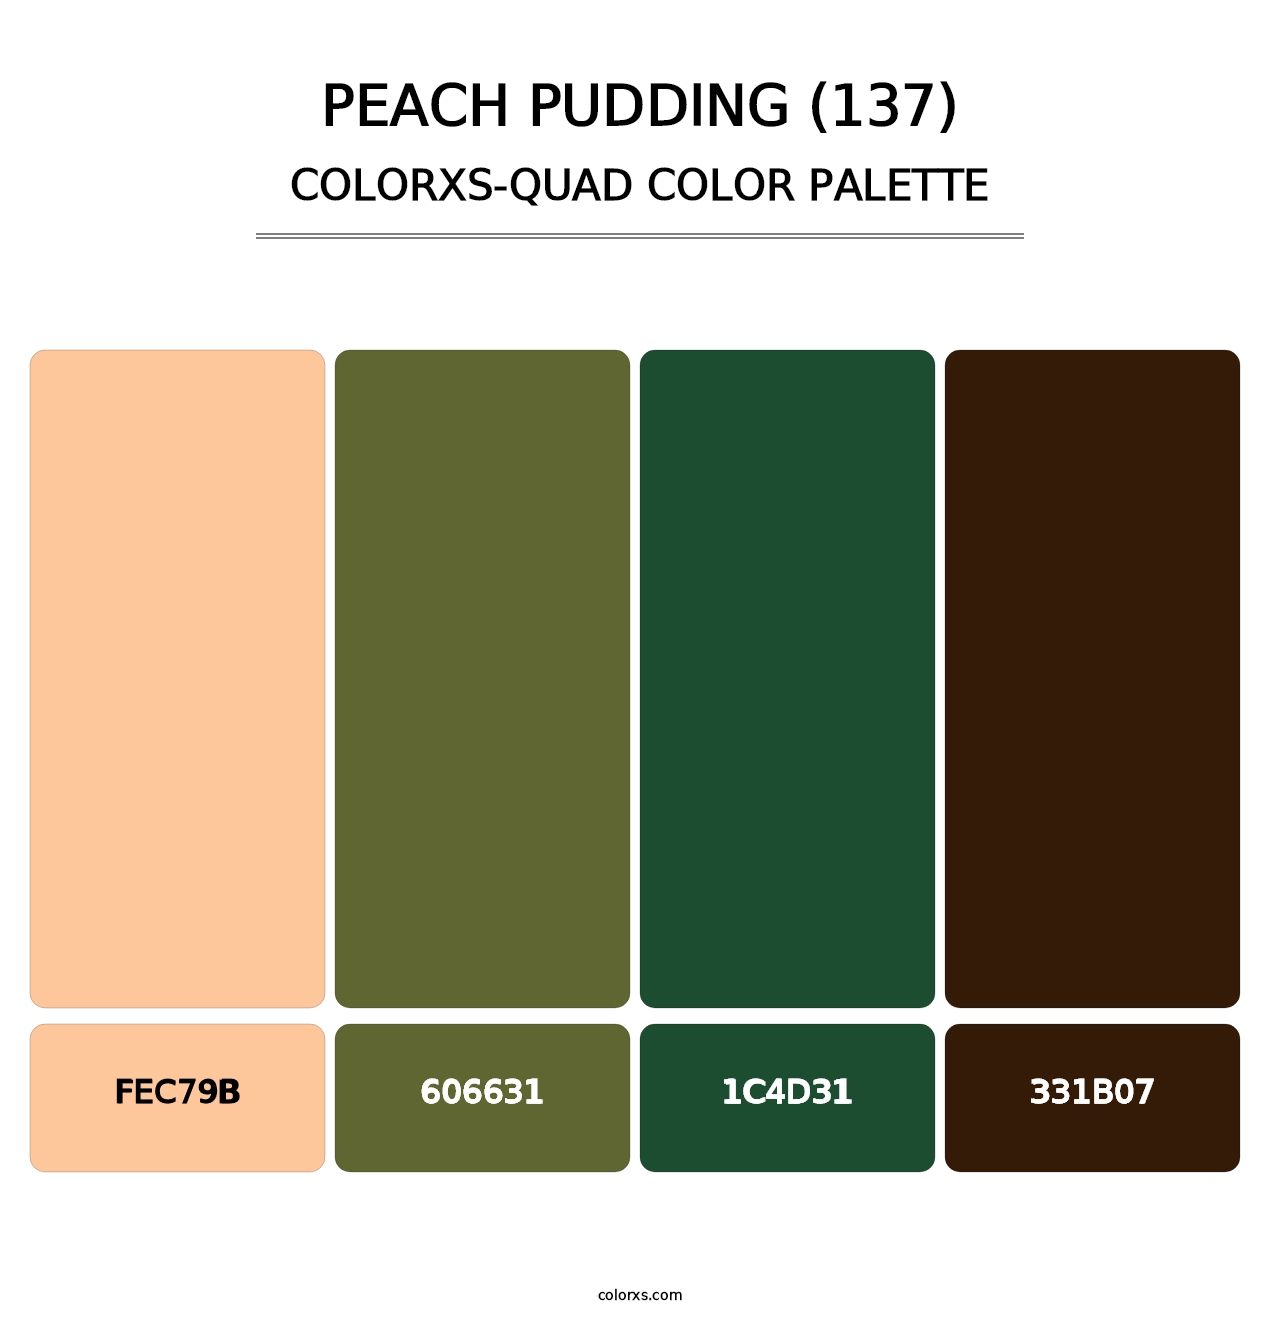 Peach Pudding (137) - Colorxs Quad Palette